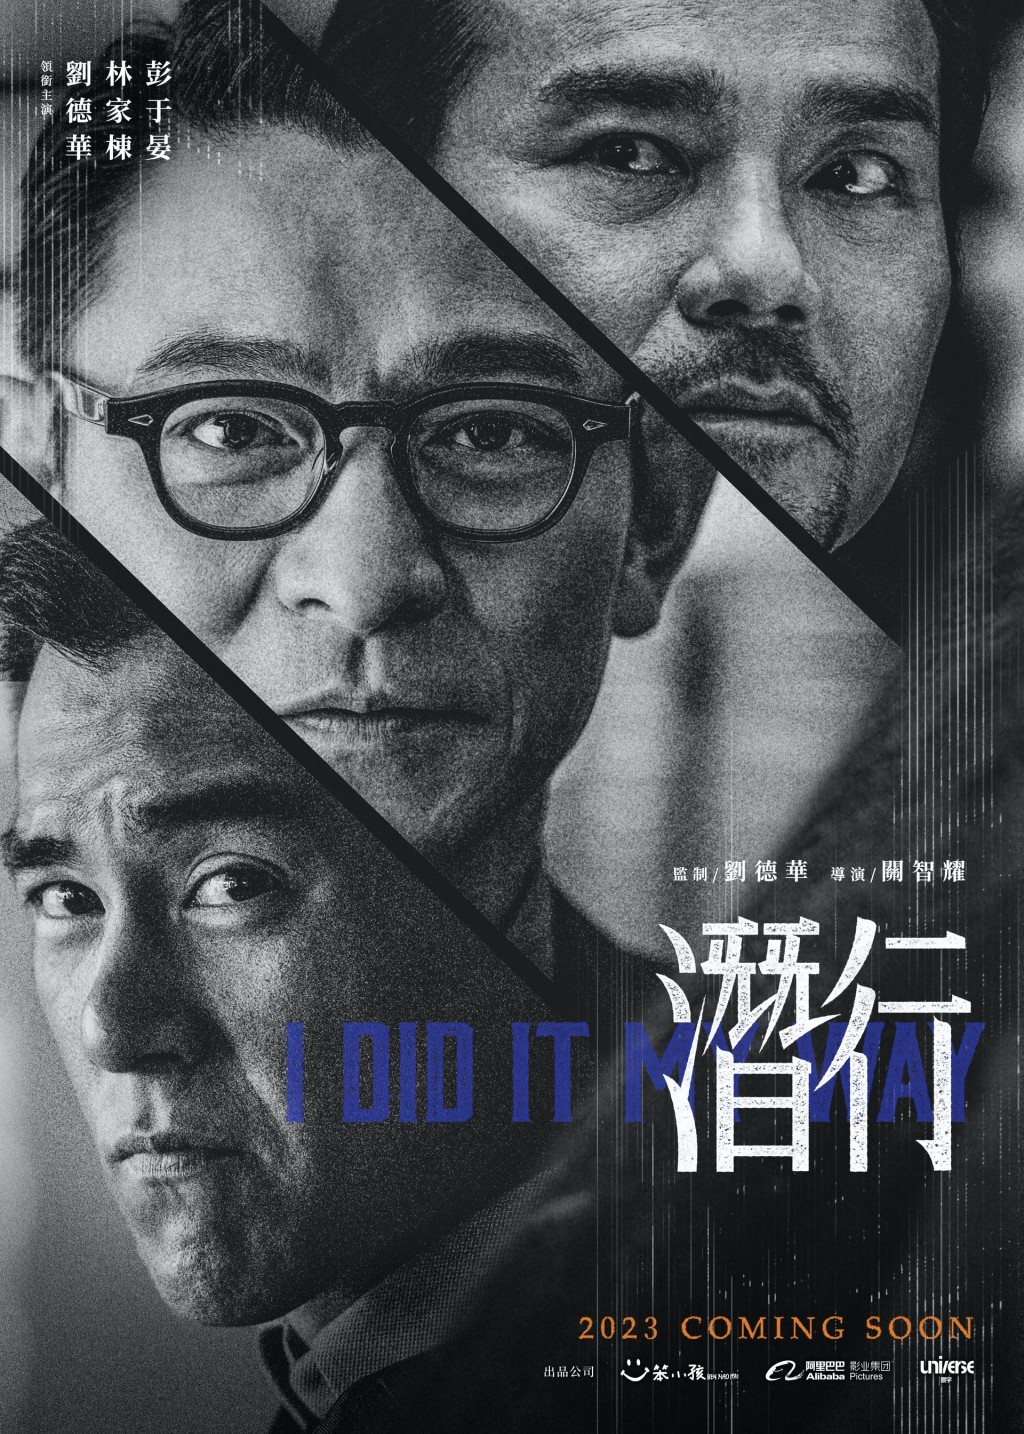 不過在今年12月，彭于晏與劉德華、林家棟主演的港產片《潛行》預計將在內地上映。